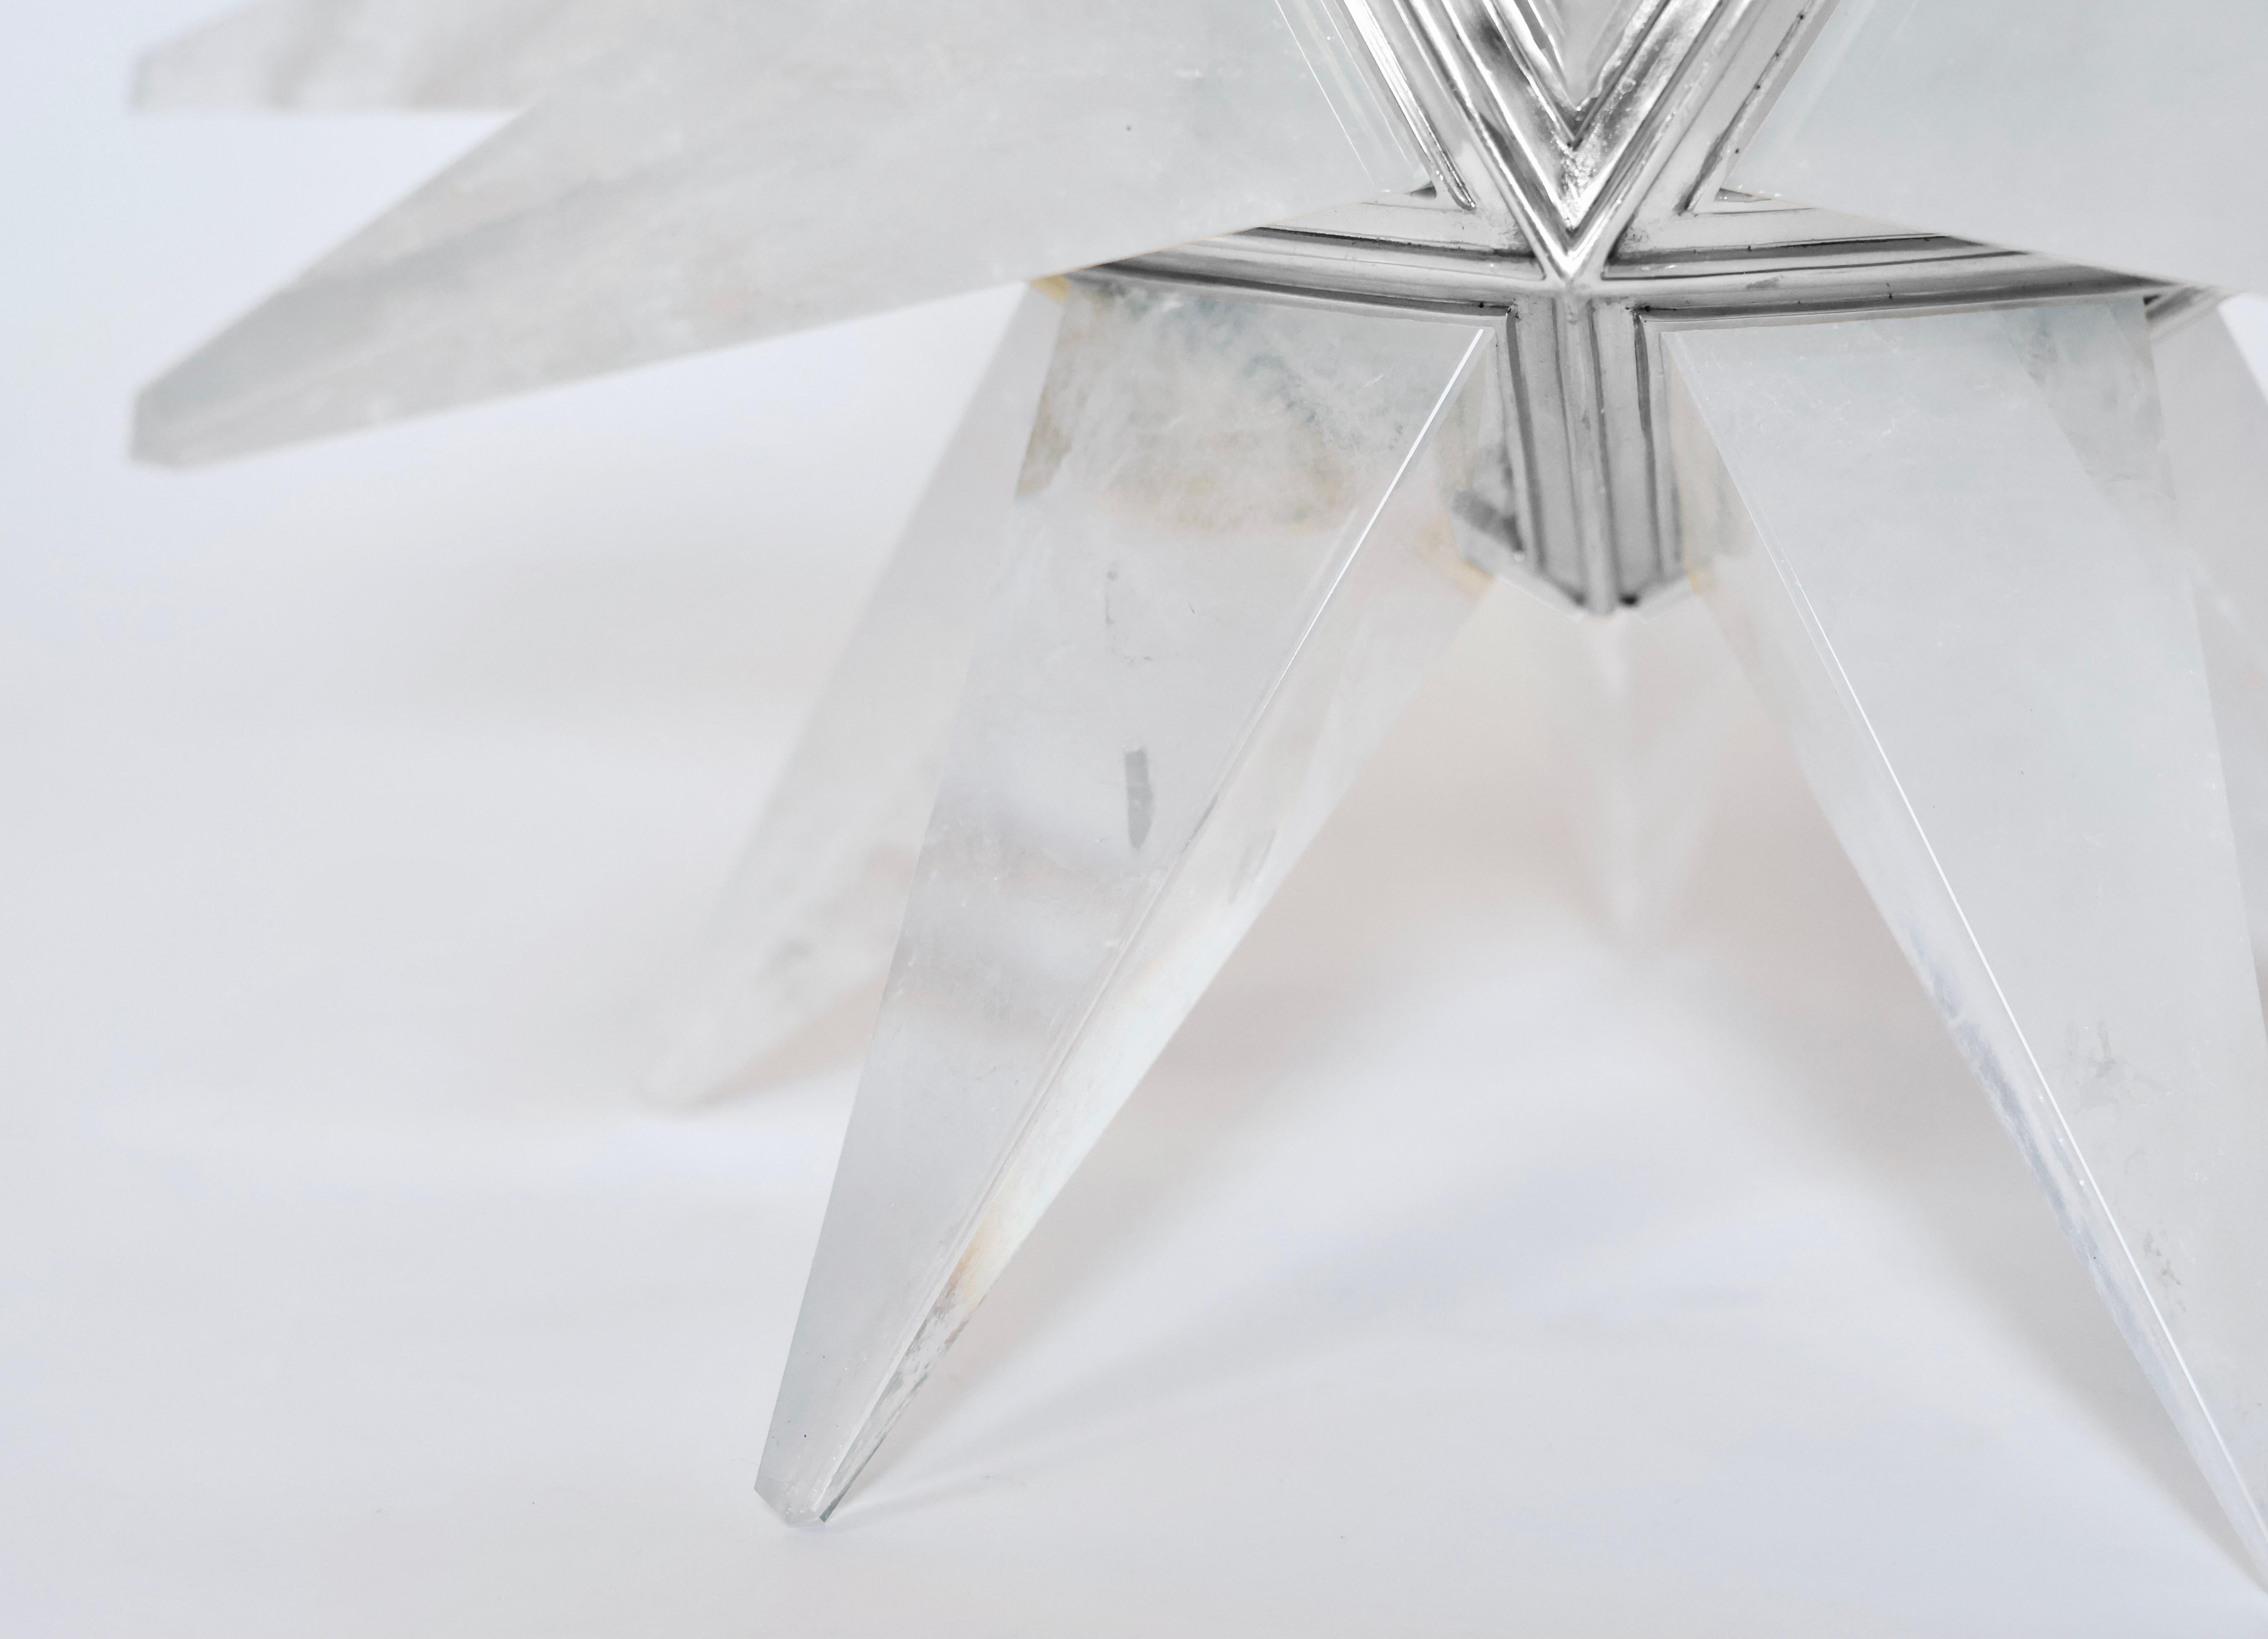 Ein Paar fein geschnitzte sternförmige Bergkristall-Kronleuchter mit vernickeltem Rahmen. Erstellt von Phoenix Gallery, NYC.
Der Kronleuchter ist 20